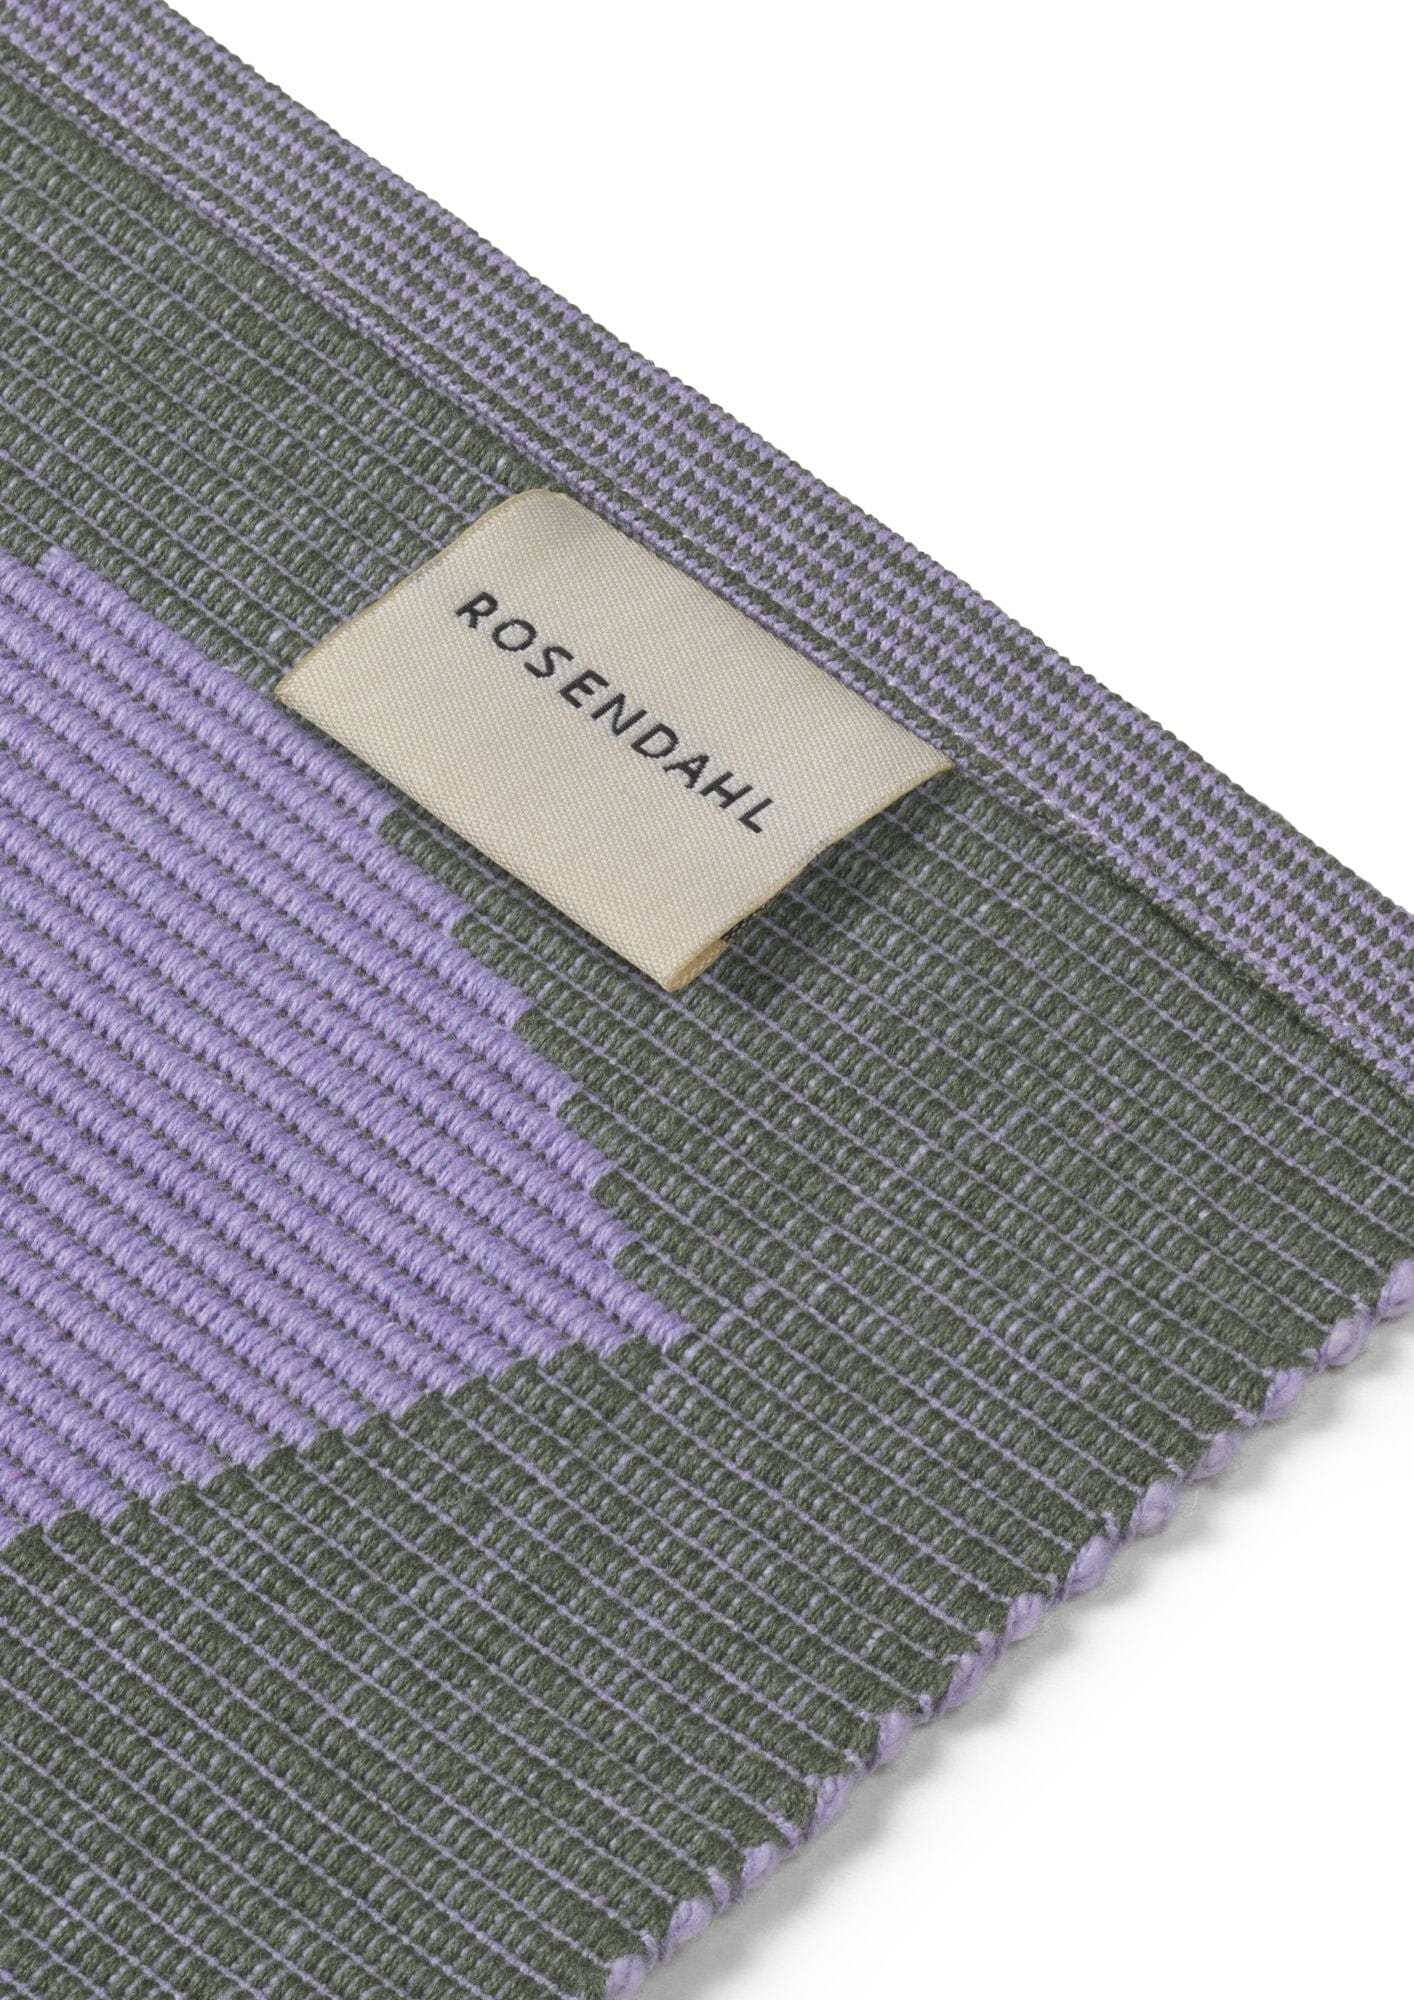 Rosendahl Rosendahl Textiles Outdoor Natura Dækkeserviet 43x30 Cm, Grøn/Lavendel